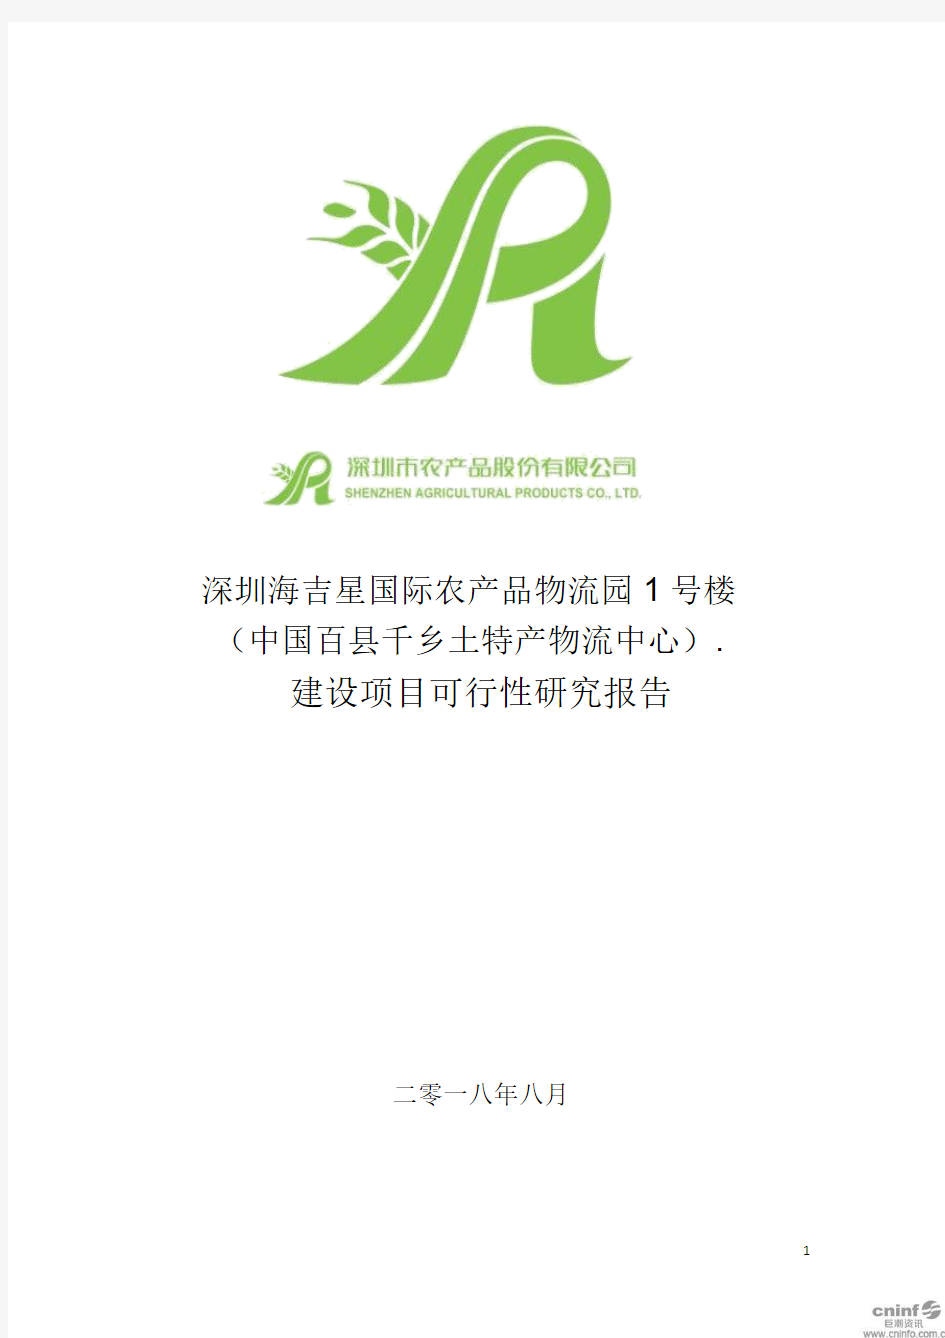 深圳海吉星国际农产品物流园1号楼(中国百县千乡土特产物流中心)建设项目可行性研究报告